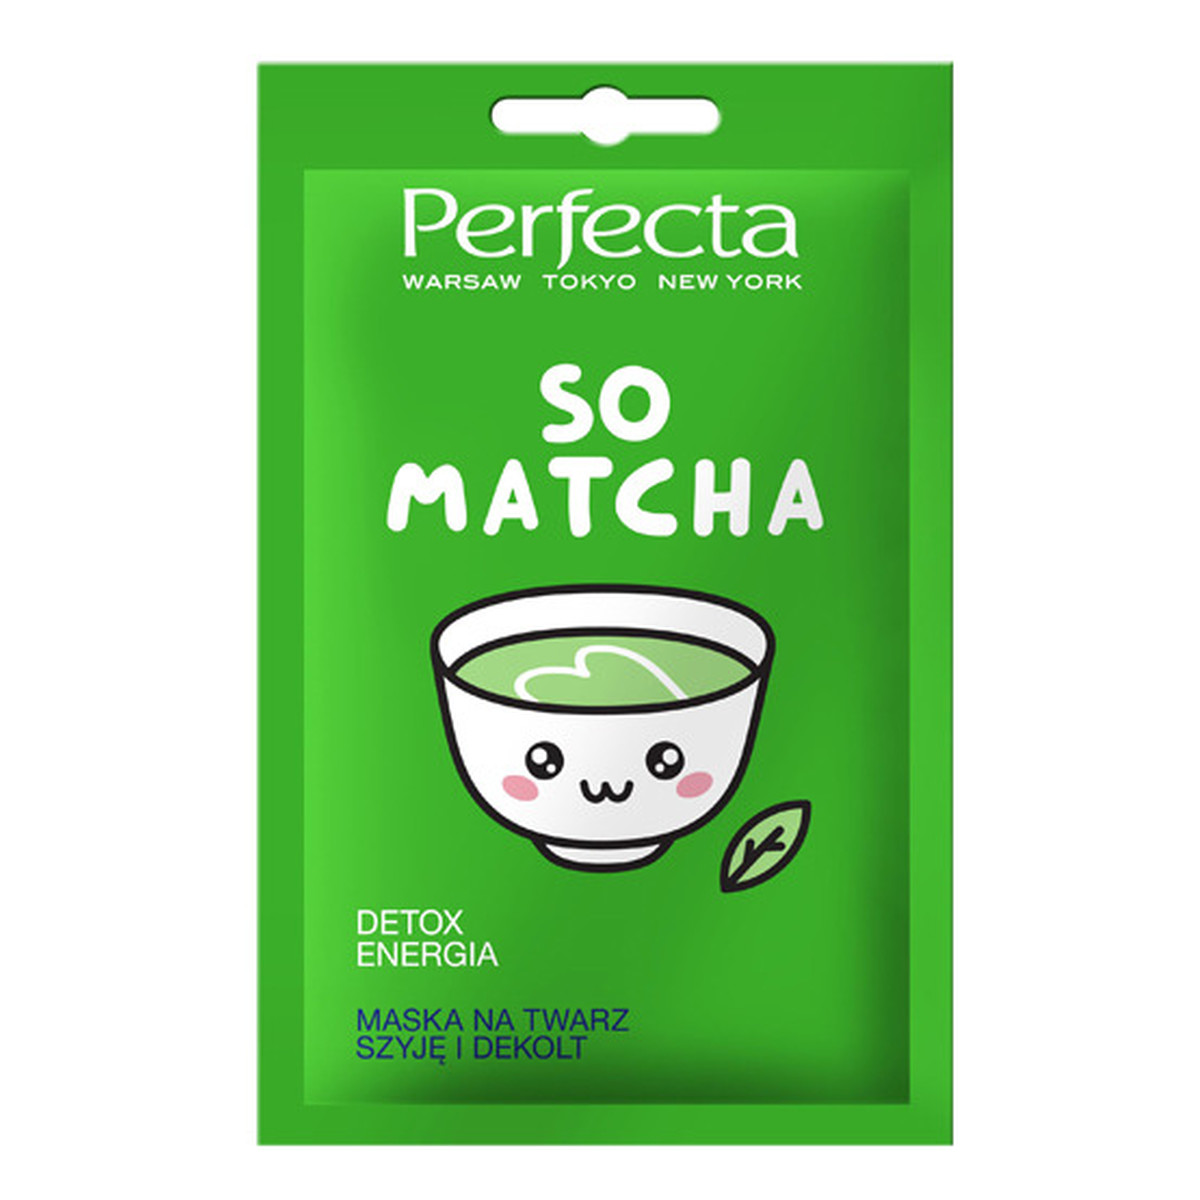 Perfecta So Matcha maska detoksykująca i energizująca 10ml